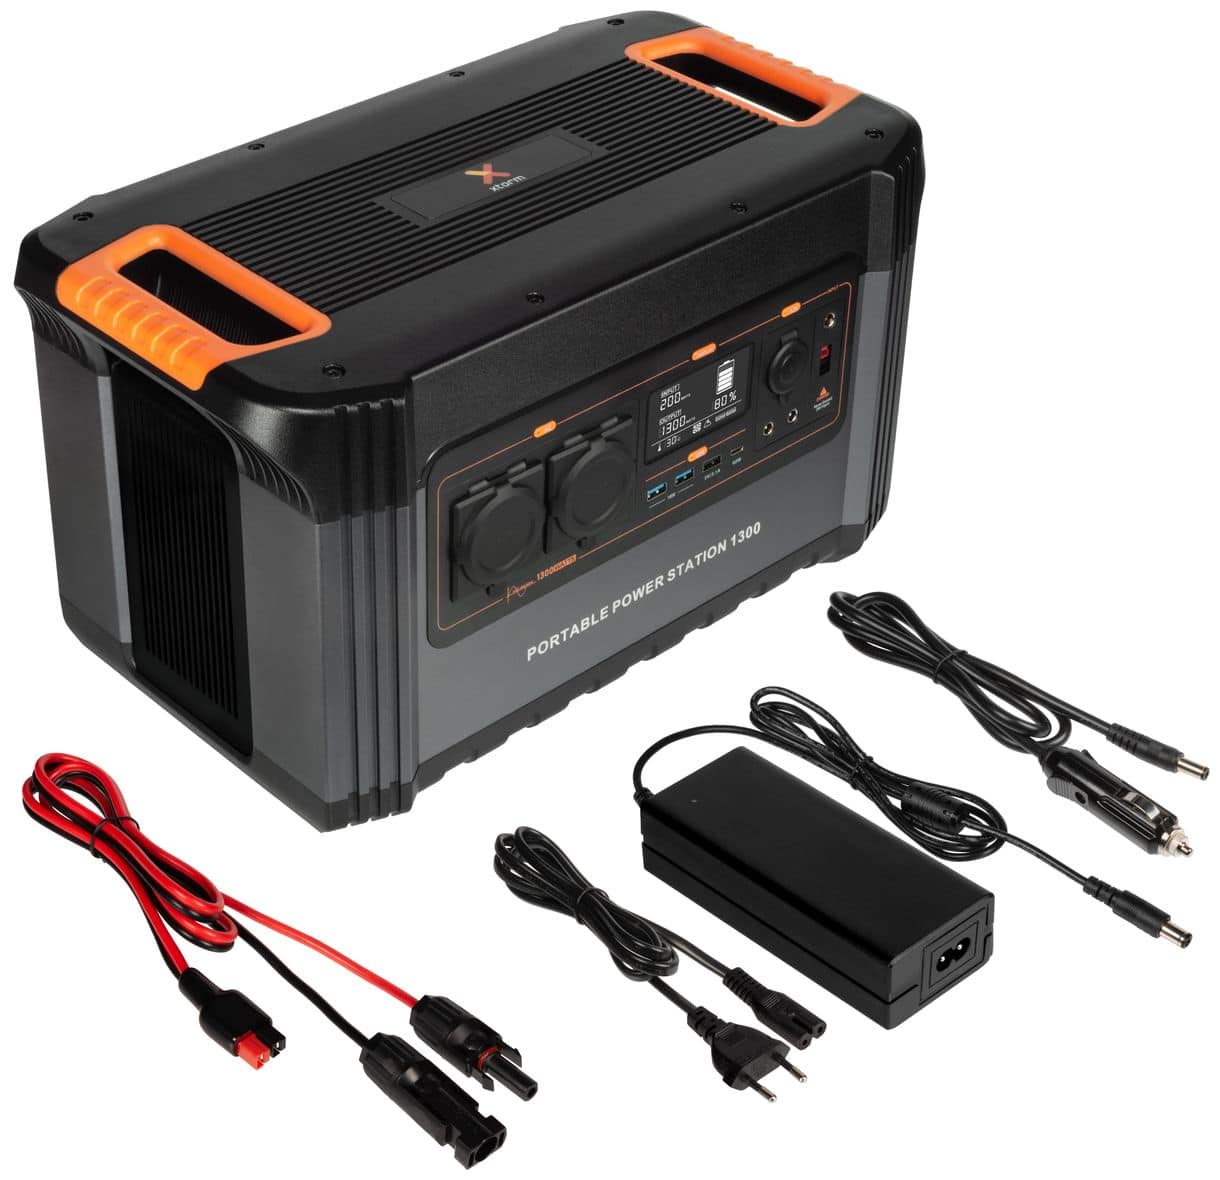 Portable Power Station 1300, AC-Ausgang, USB-C, USB, Quick Charge 3.0, Ausgang für Autoladegerät, DC-Ausgänge, div. Kabel, Schwarz/Orange 